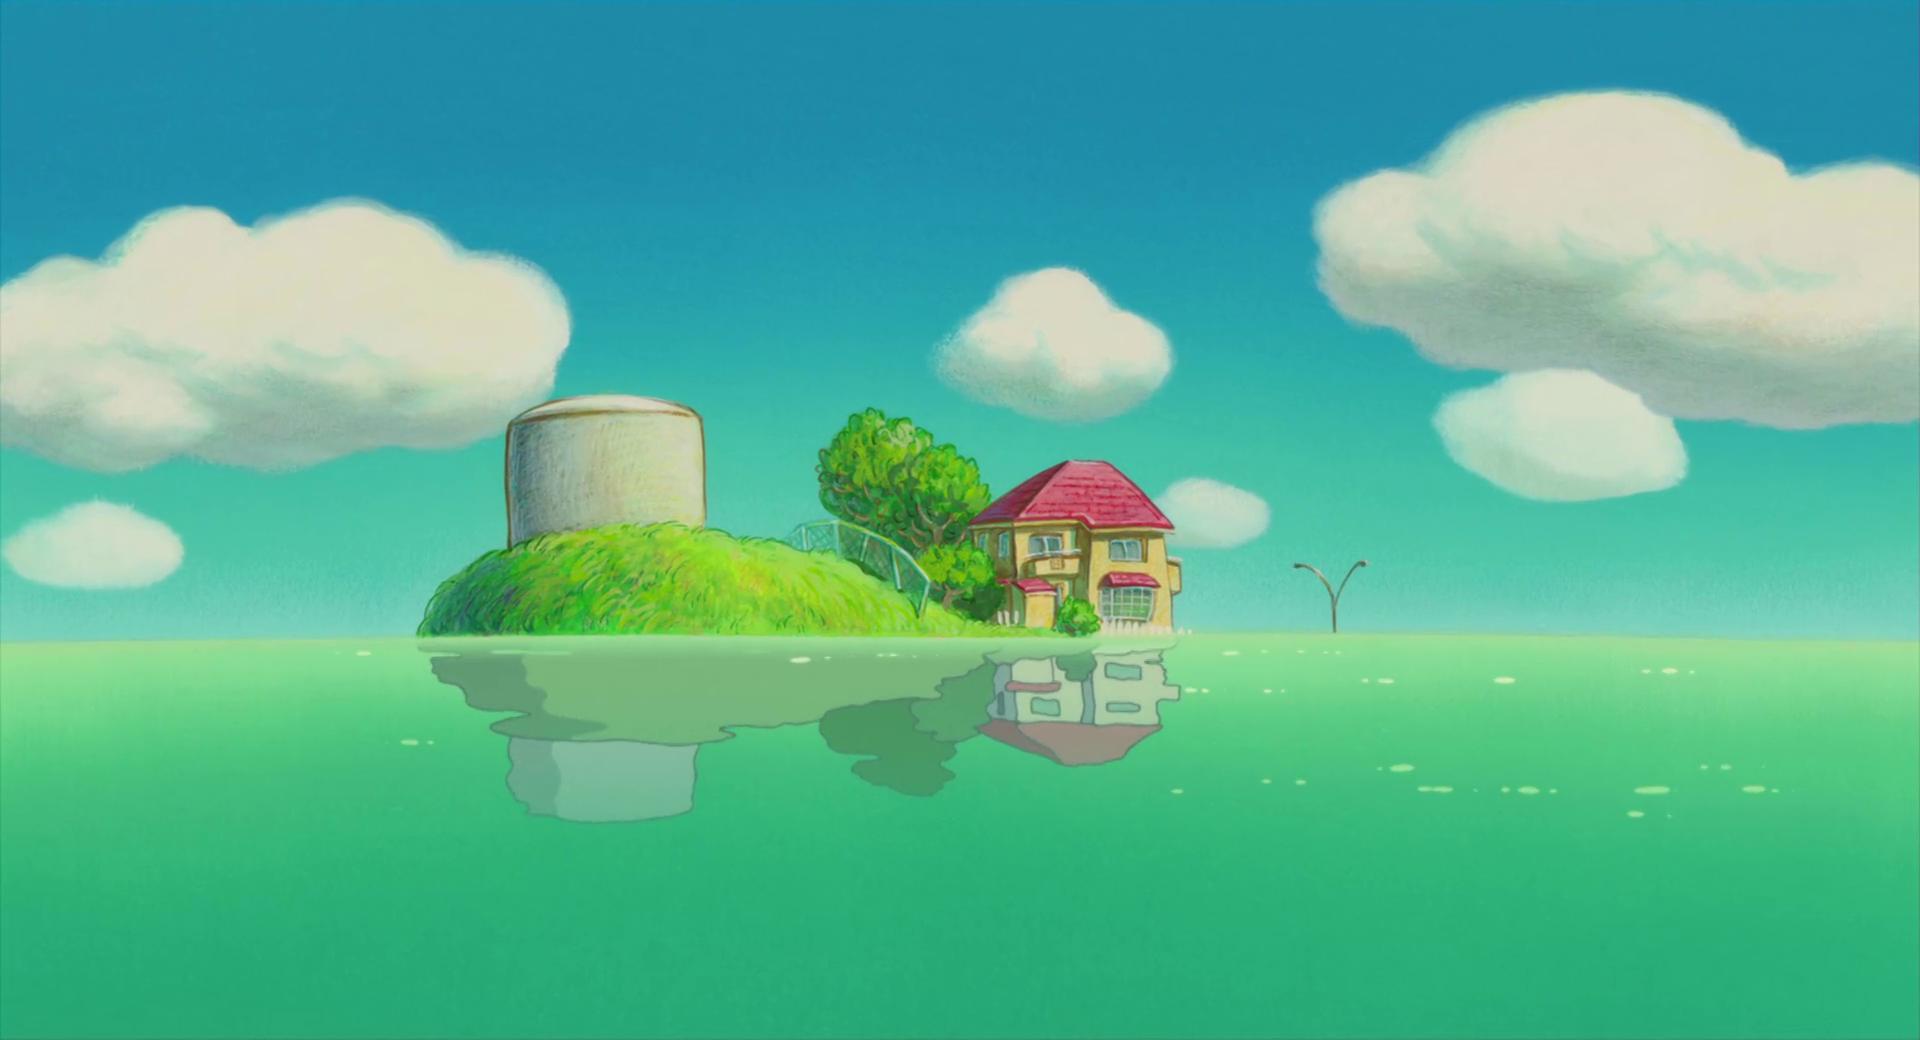 Studio Ghibli luôn là một trong những thương hiệu được yêu thích nhất trên thế giới. Những hình nền máy tính Ghibli với đặc trưng là các nhân vật được thiết kế rất đáng yêu sẽ chắc chắn khiến bạn cười toe toét. Thưởng thức bộ sưu tập này và hãy làm cho màn hình máy tính của bạn trở nên sinh động và độc đáo hơn bao giờ hết.